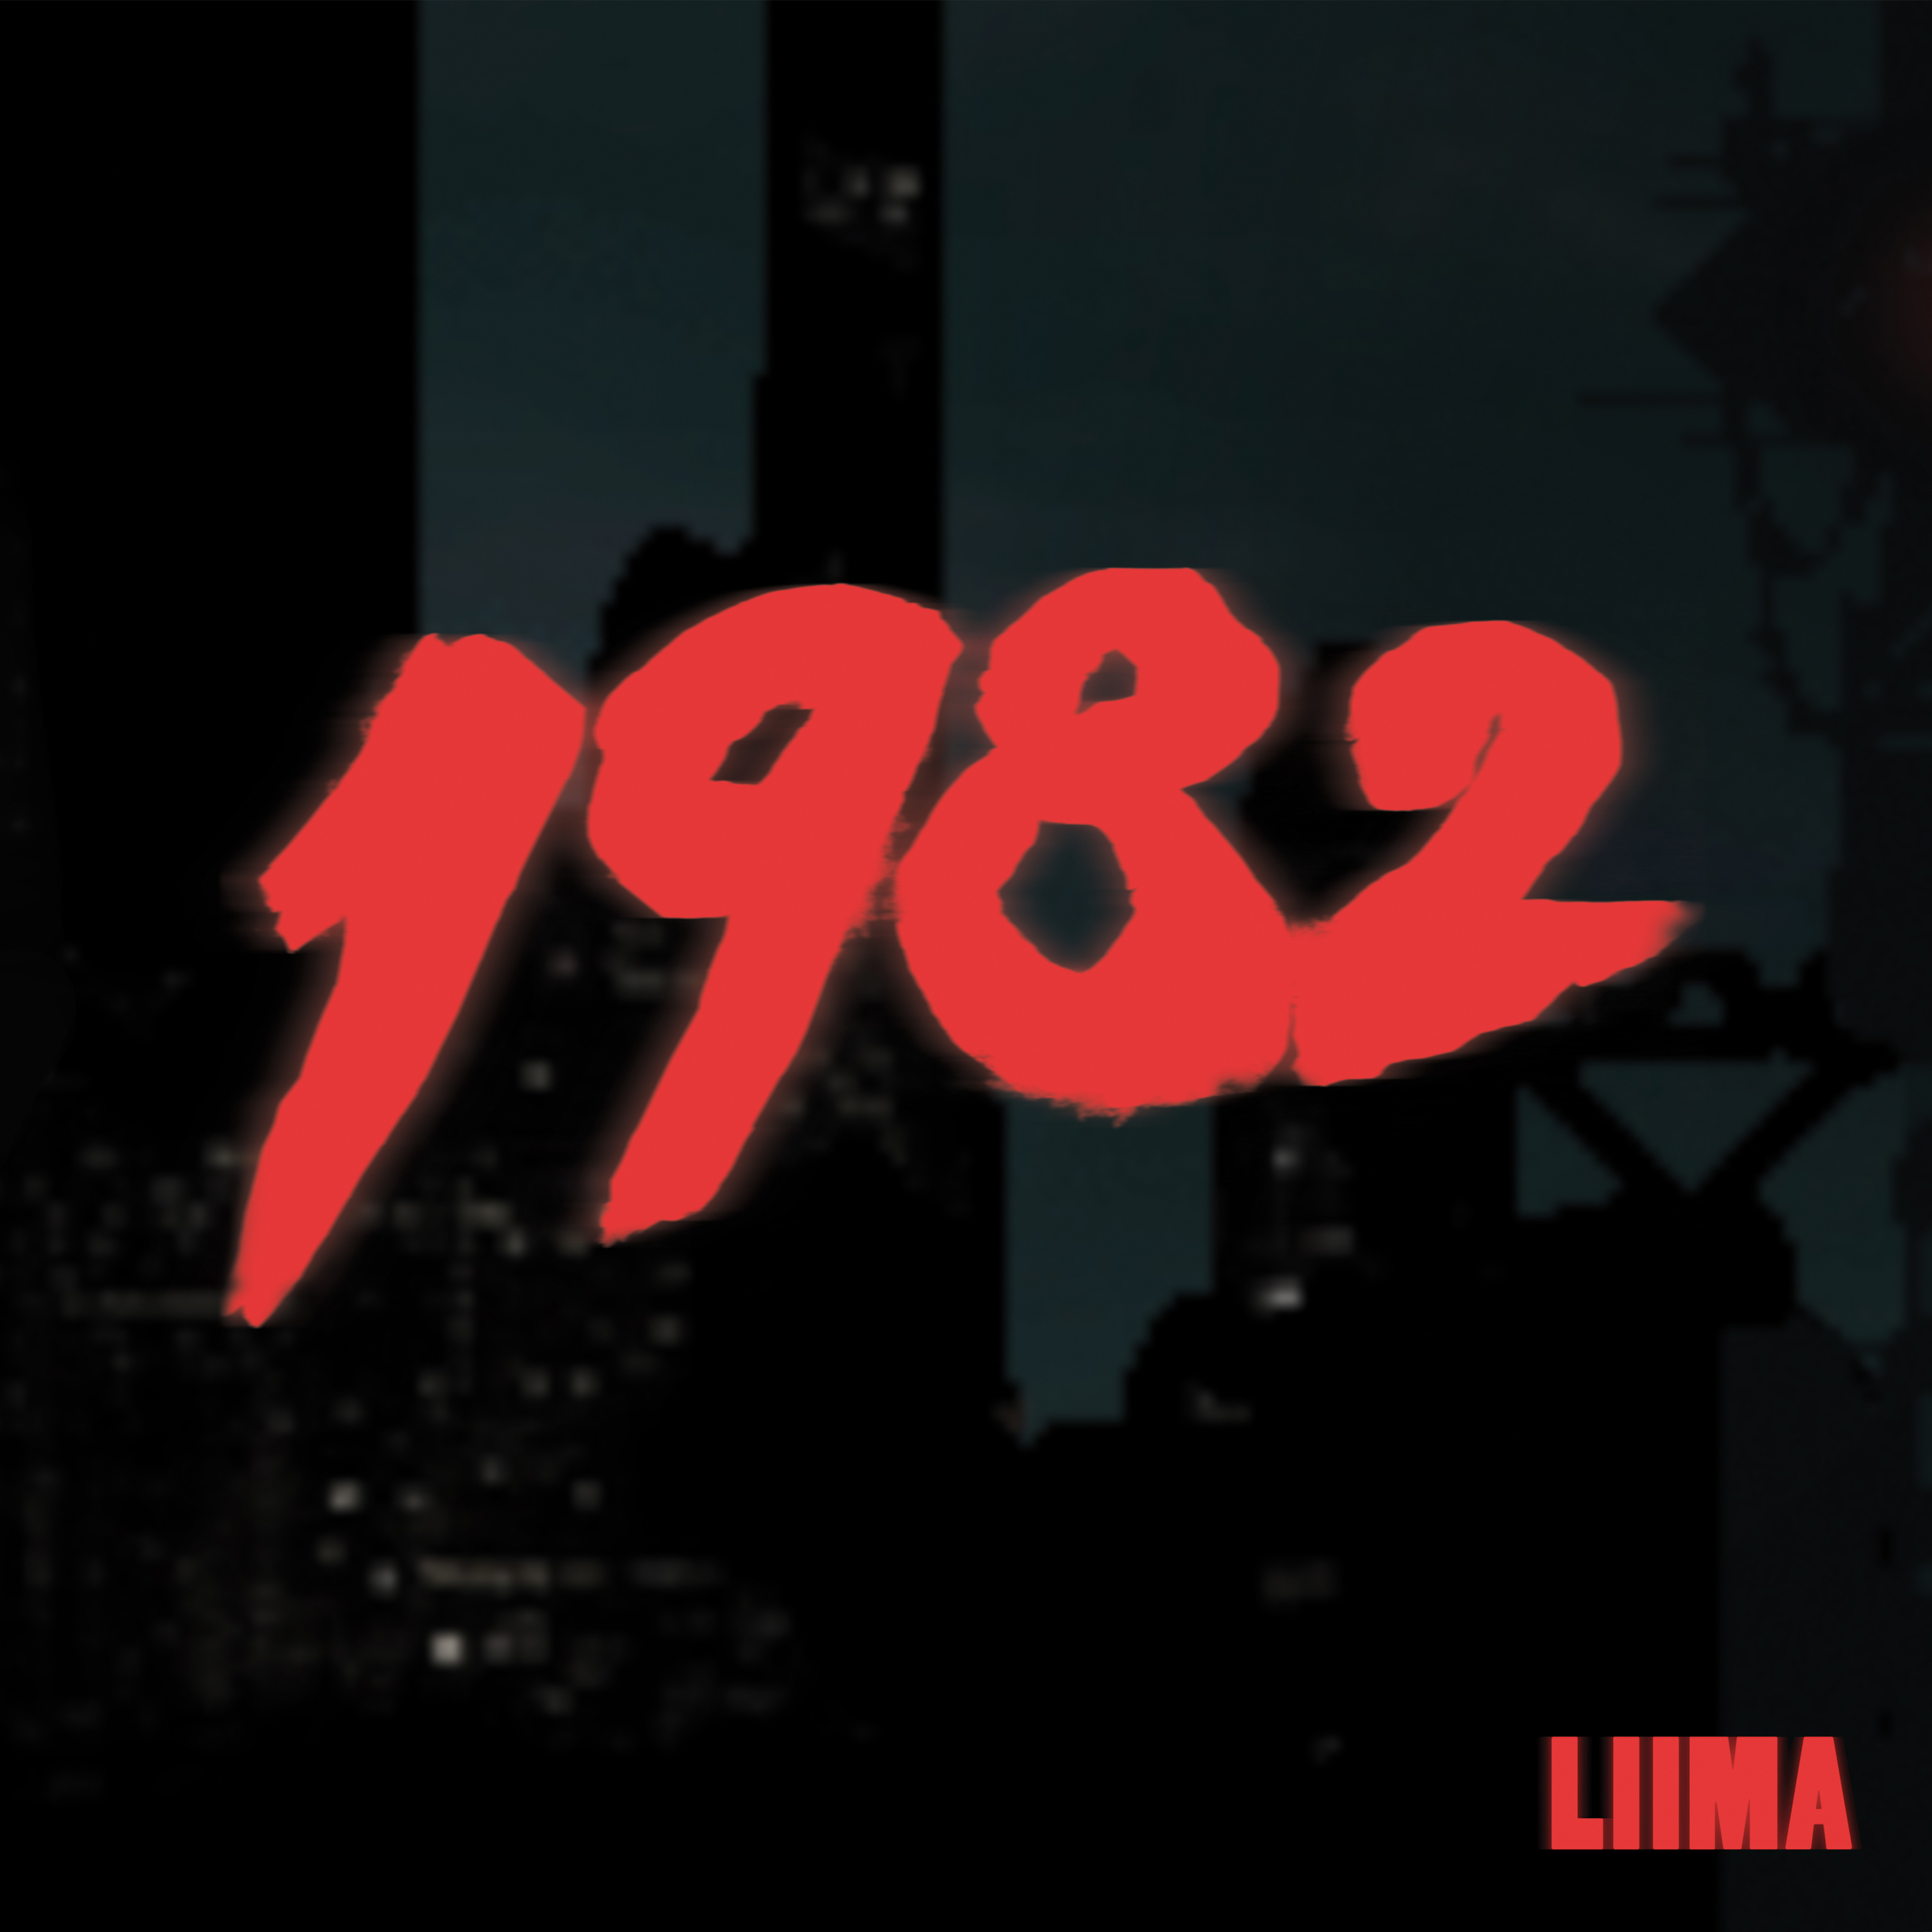 Liima - 1982 - CD